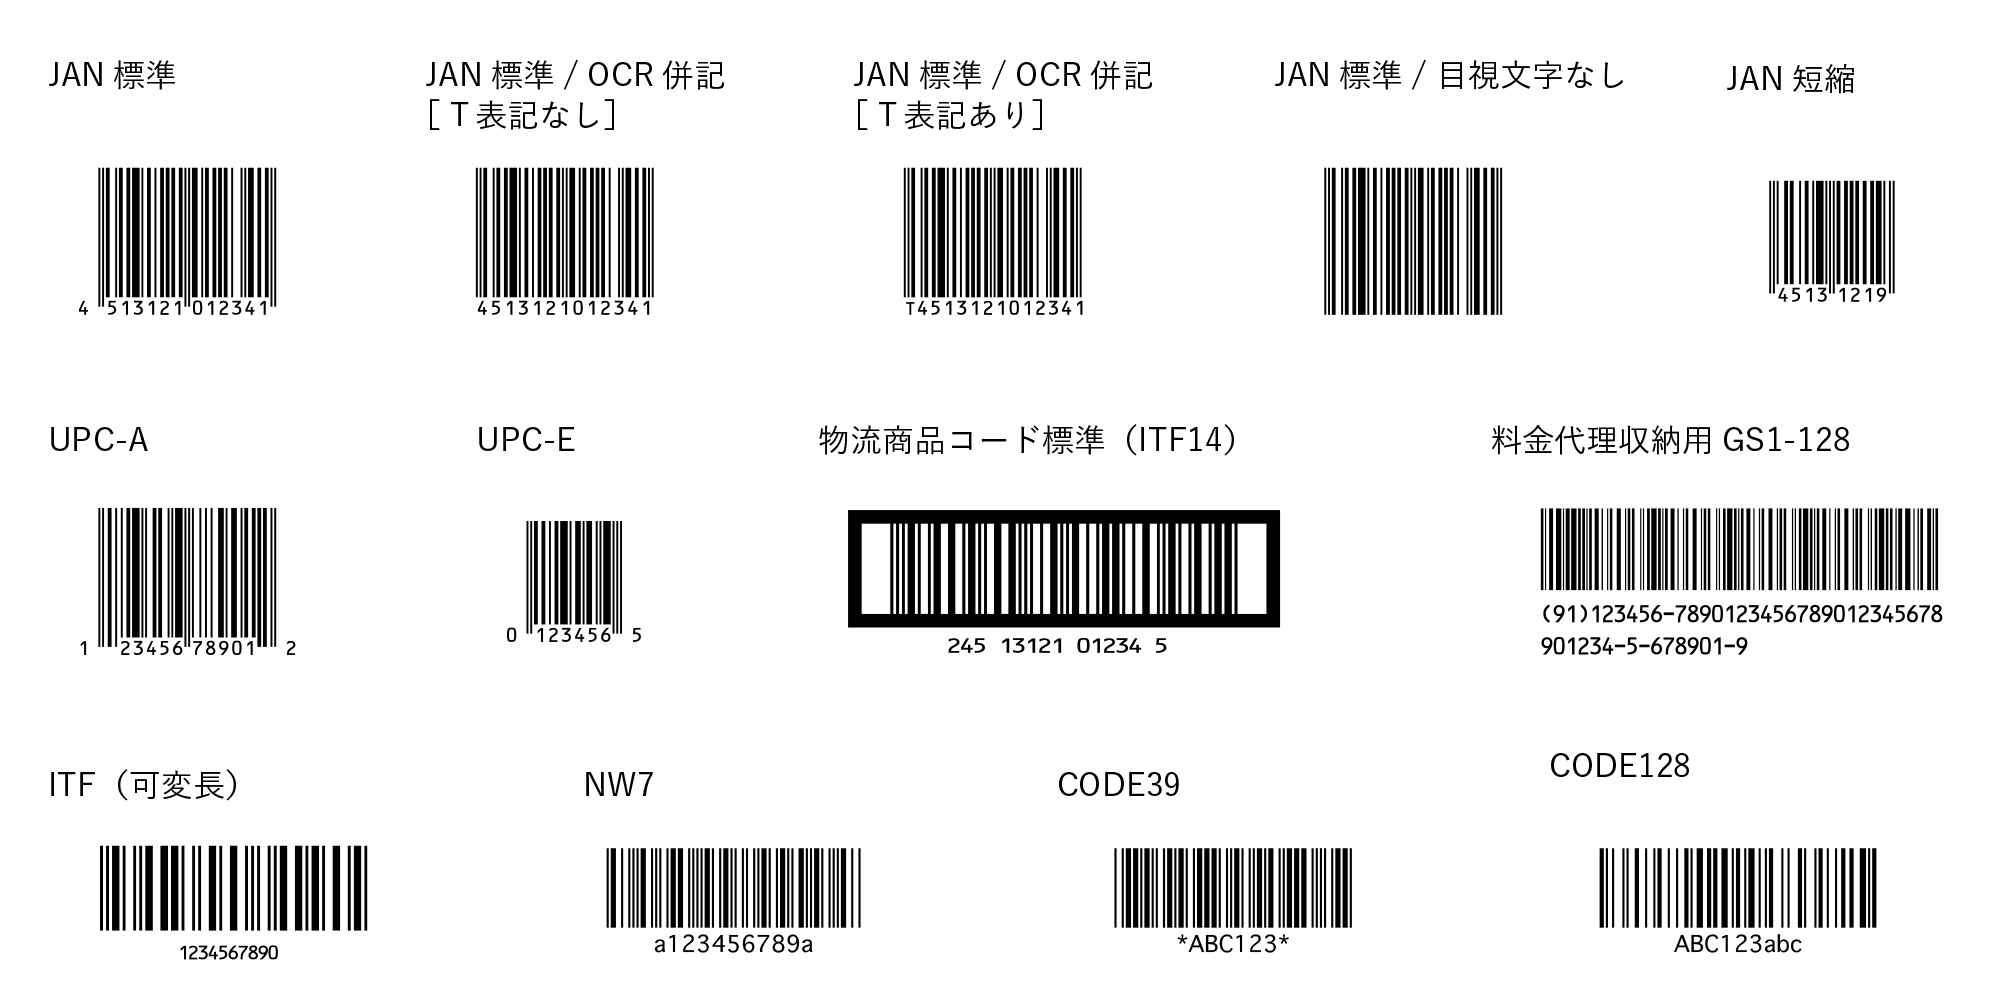 Barcode Plot バーコードサンプル